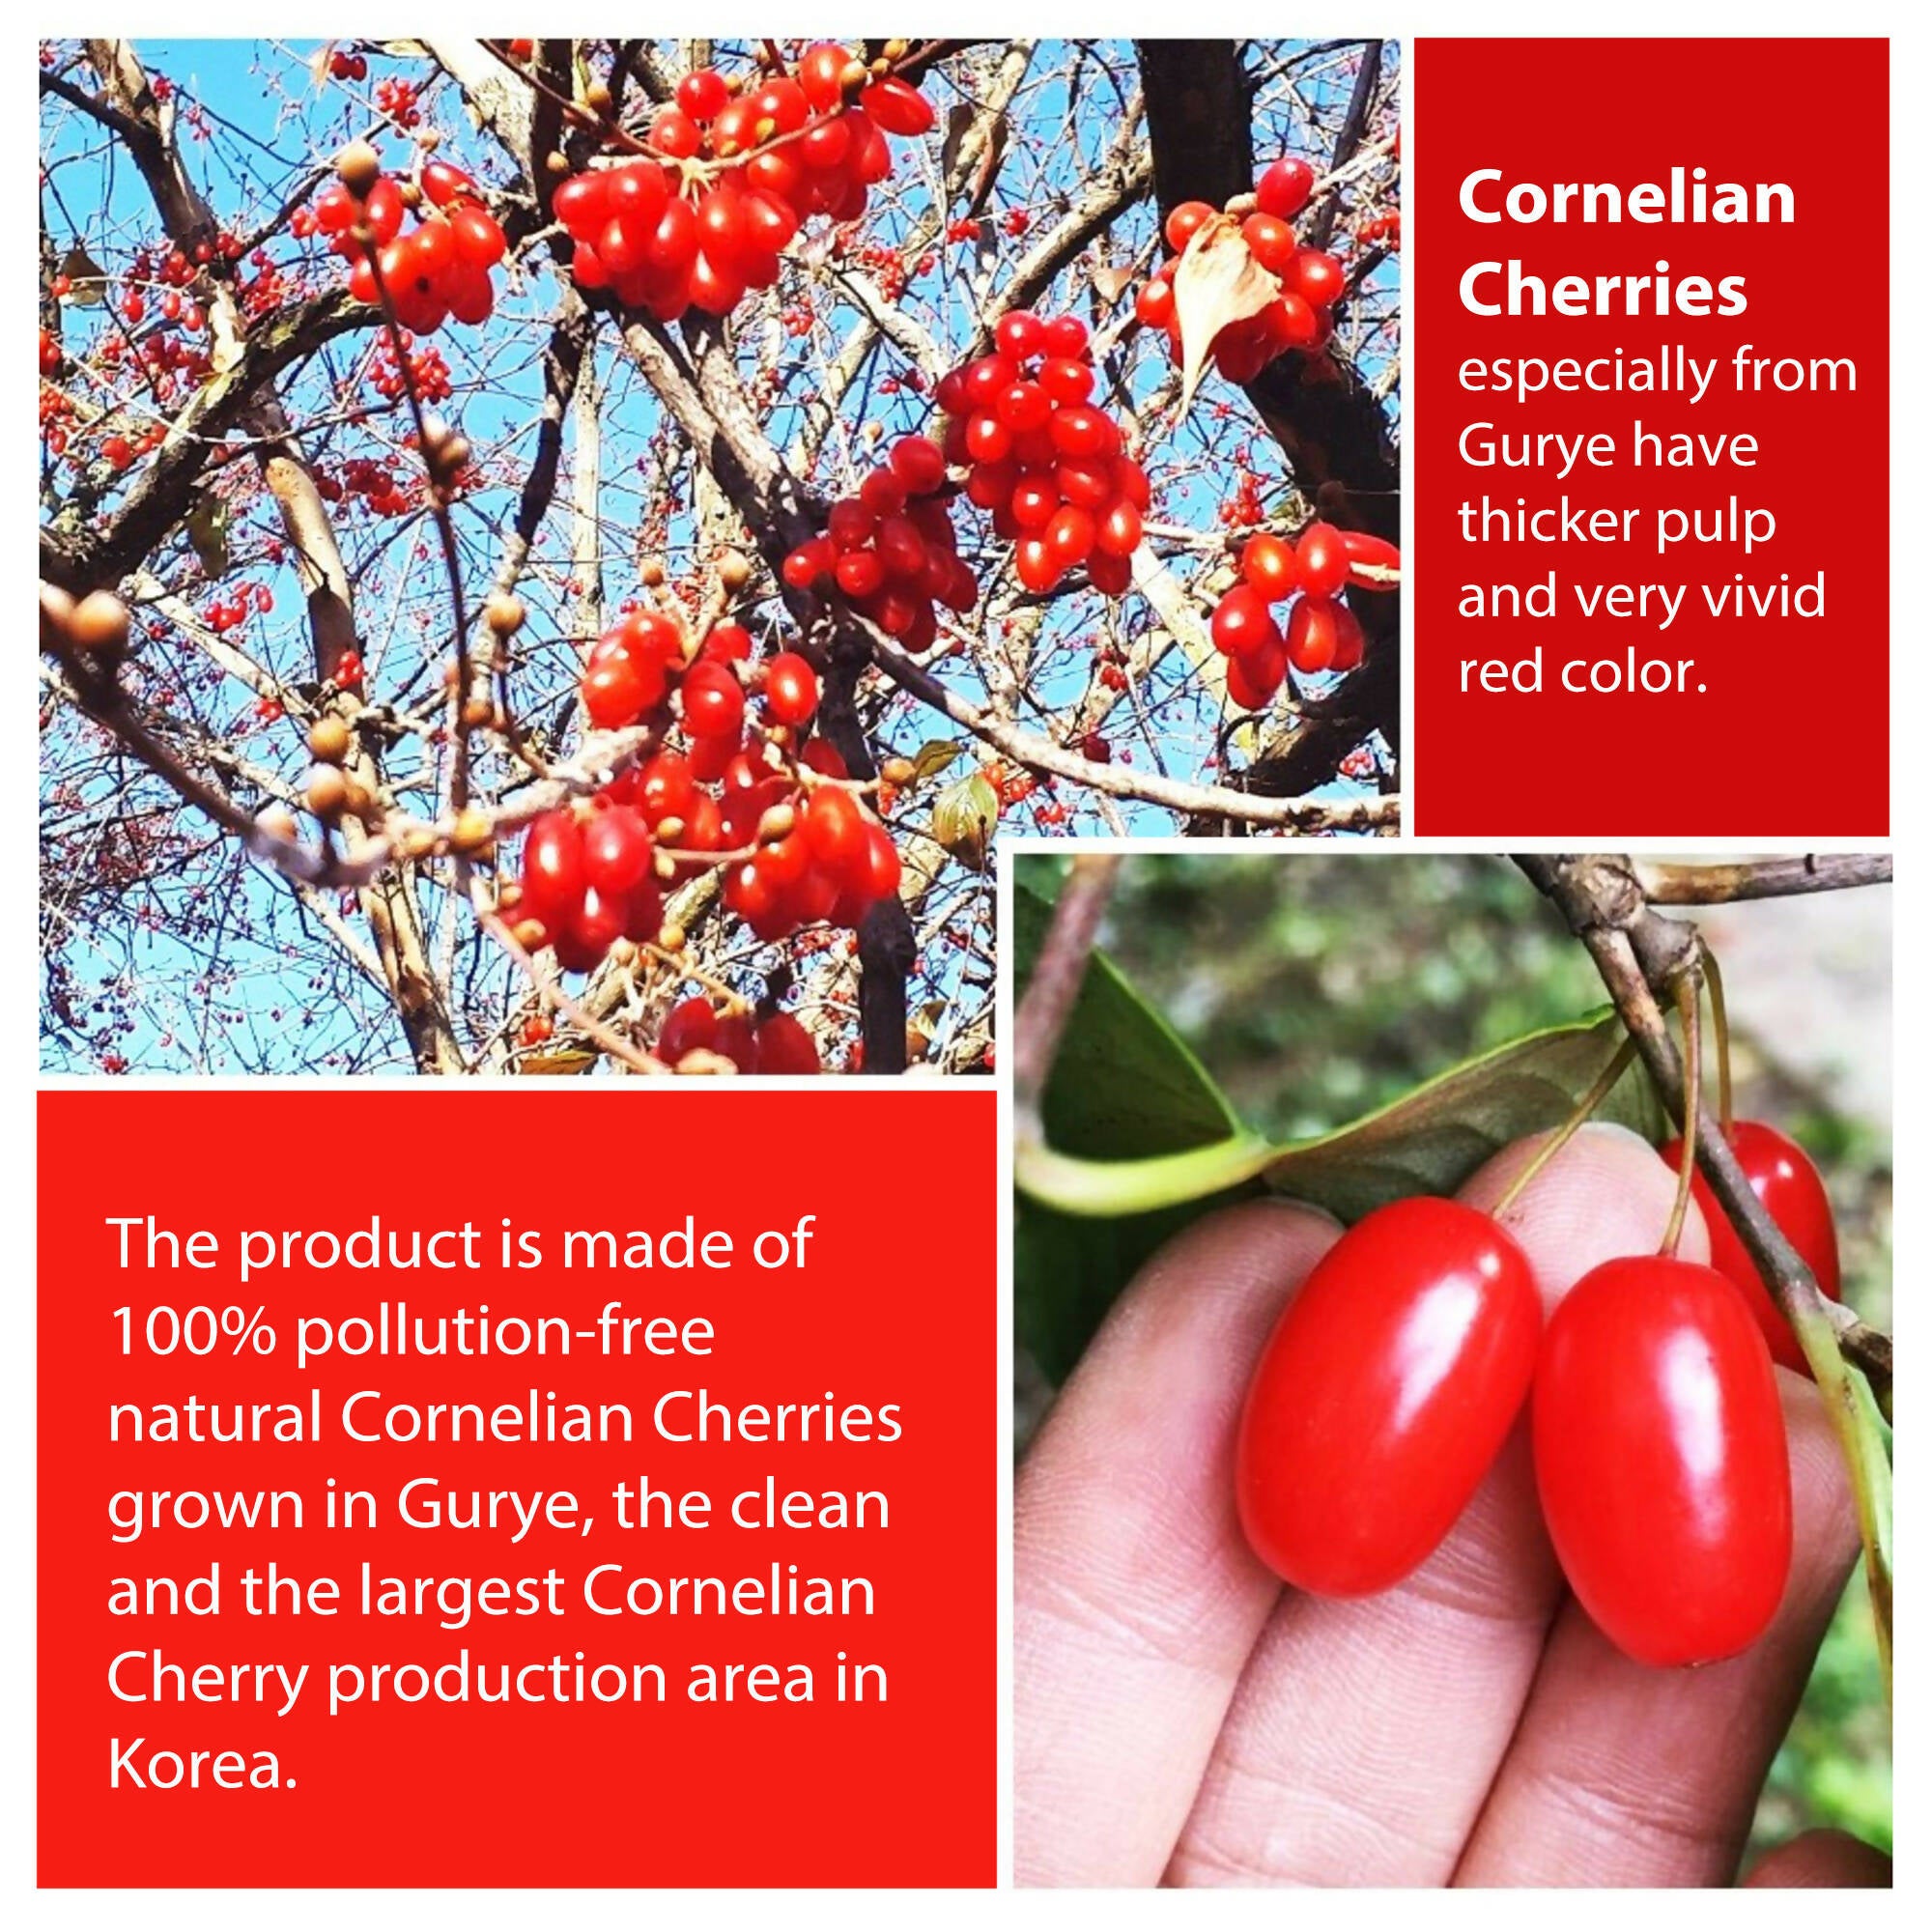 Freenong Natural Dried Cornelian Cherry Extract Liquid - 지리산 산수유 마을 프리농 산수유즙 선물세트 (30포)